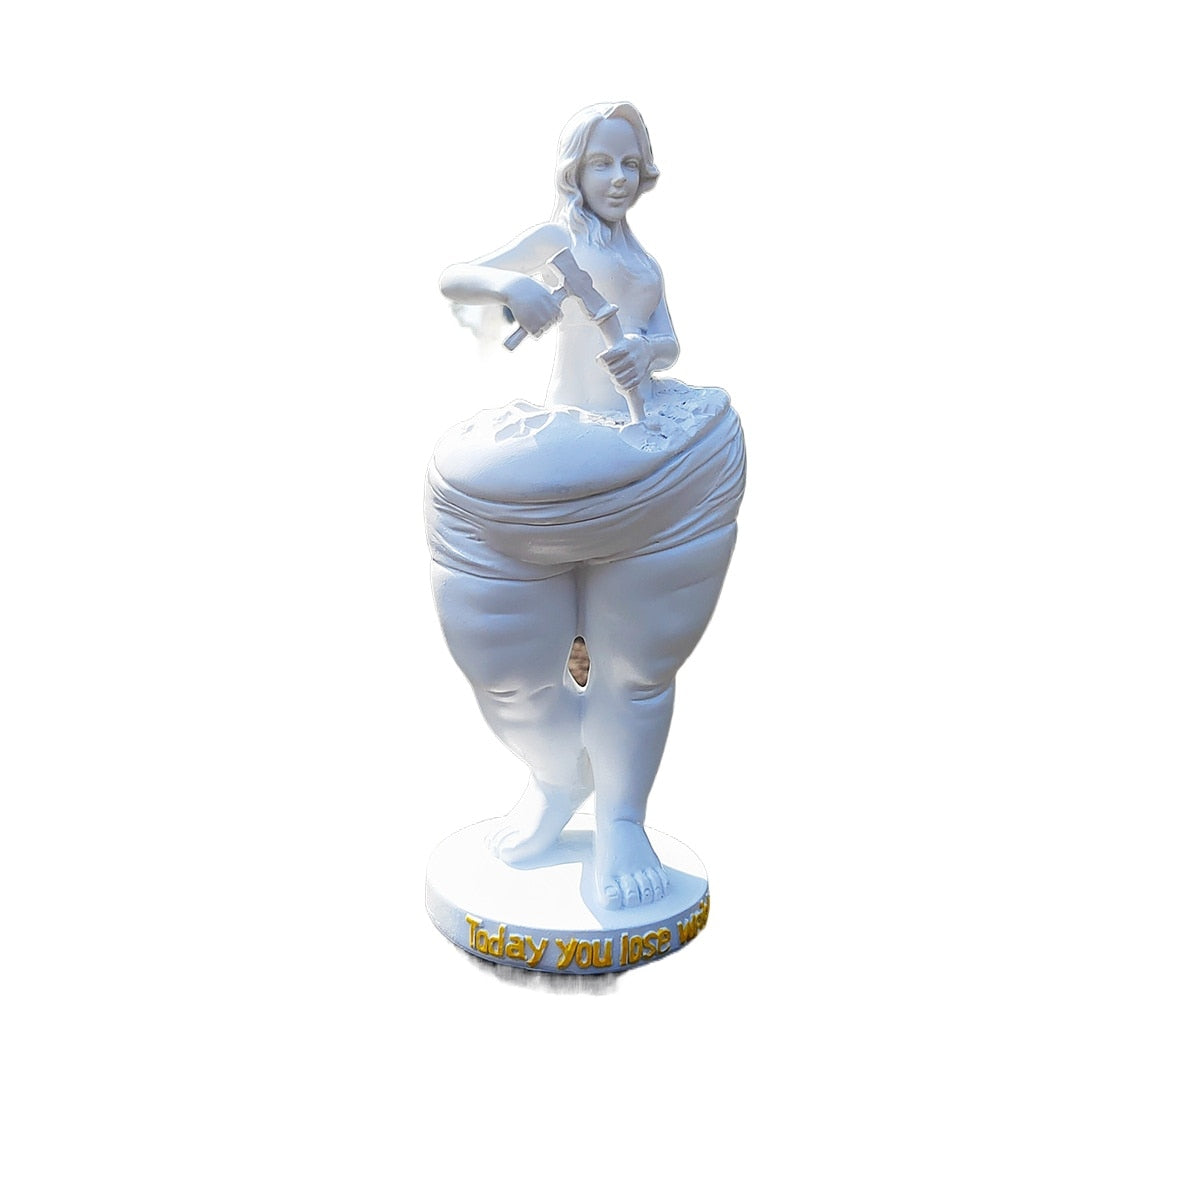 تمثال فتاة التخسيس ديكور المنزل الإبداعي تماثيل من الراتنج غرفة المعيشة غرفة اليوغا الديكور إكسسوارات ديكور منزلي حديث